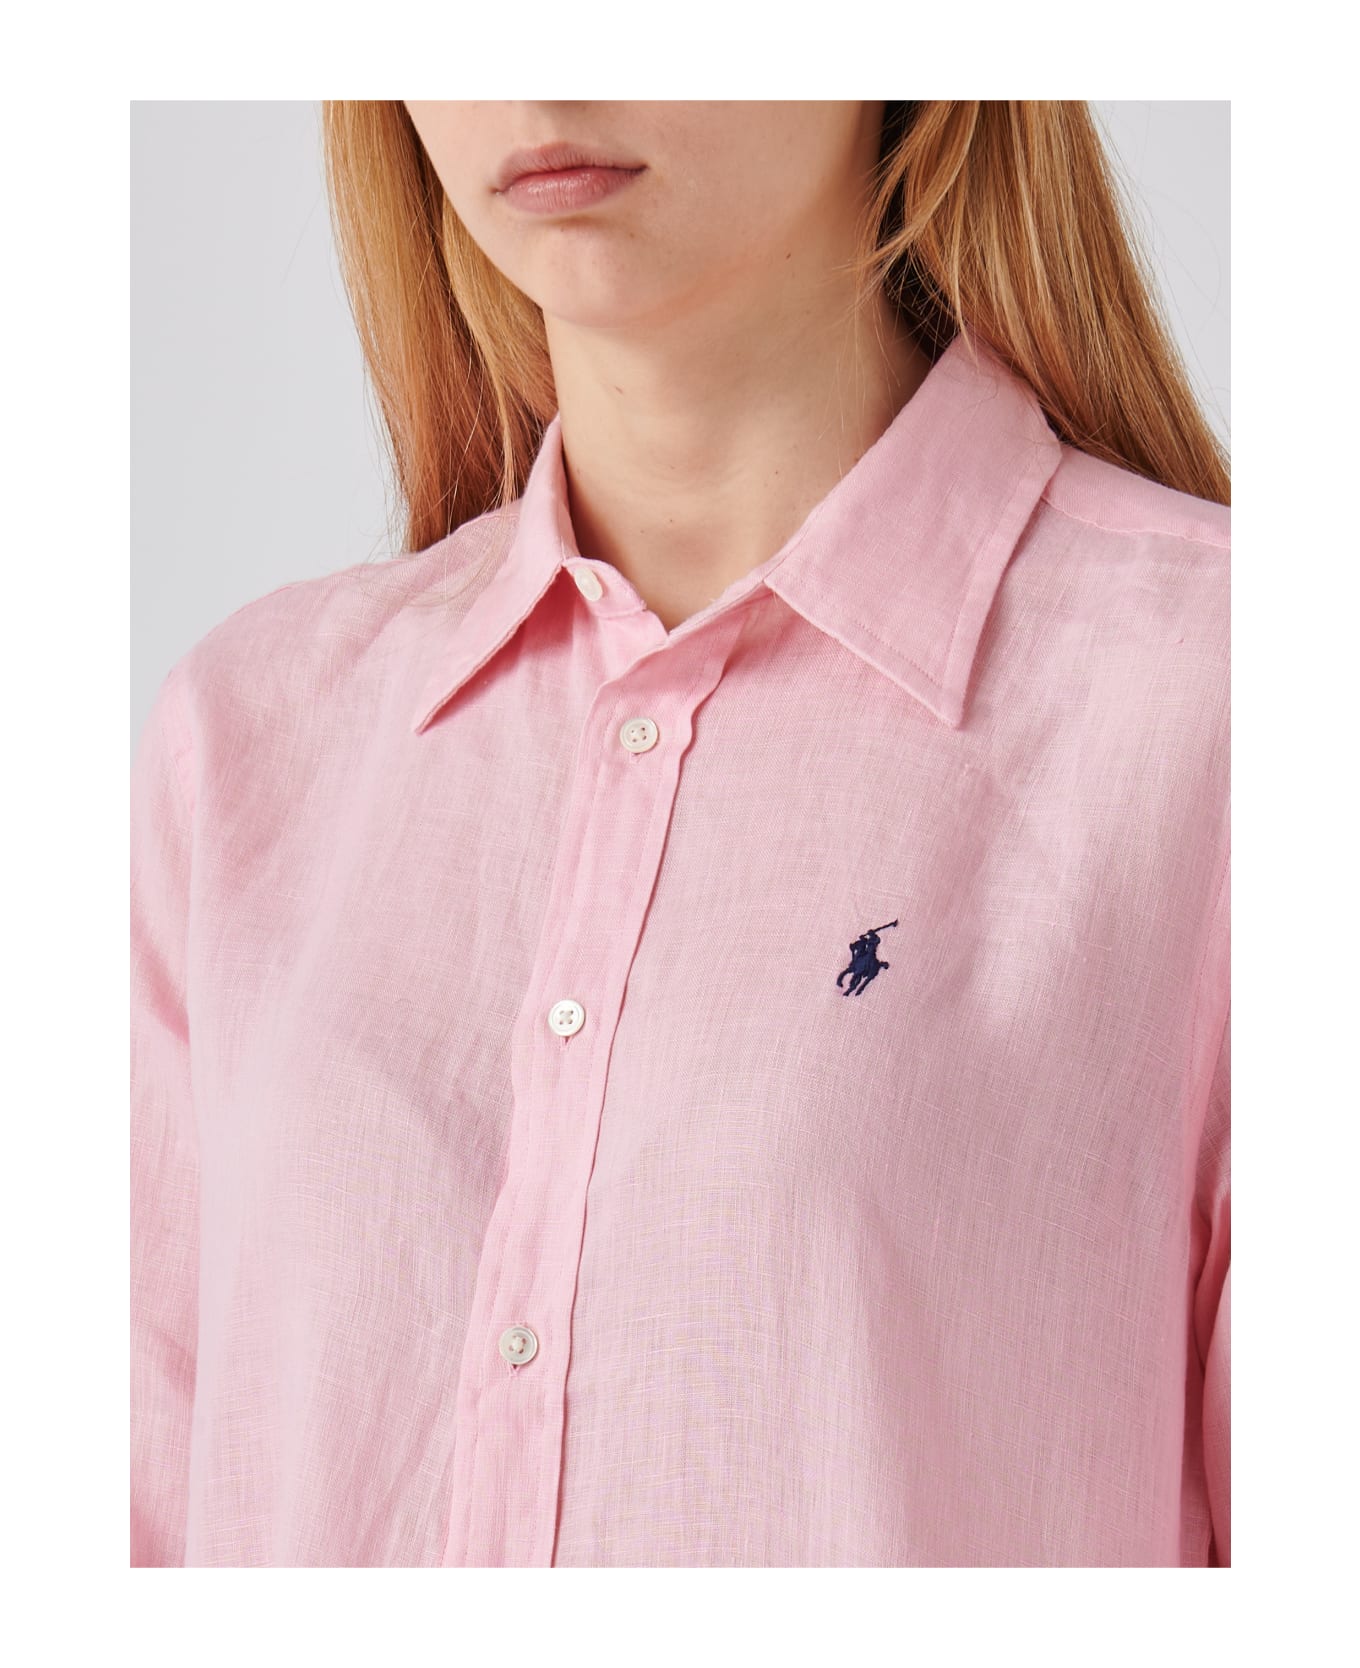 Polo Ralph Lauren Relaxed-fit Short Shirt In Pink Linen - Rosa